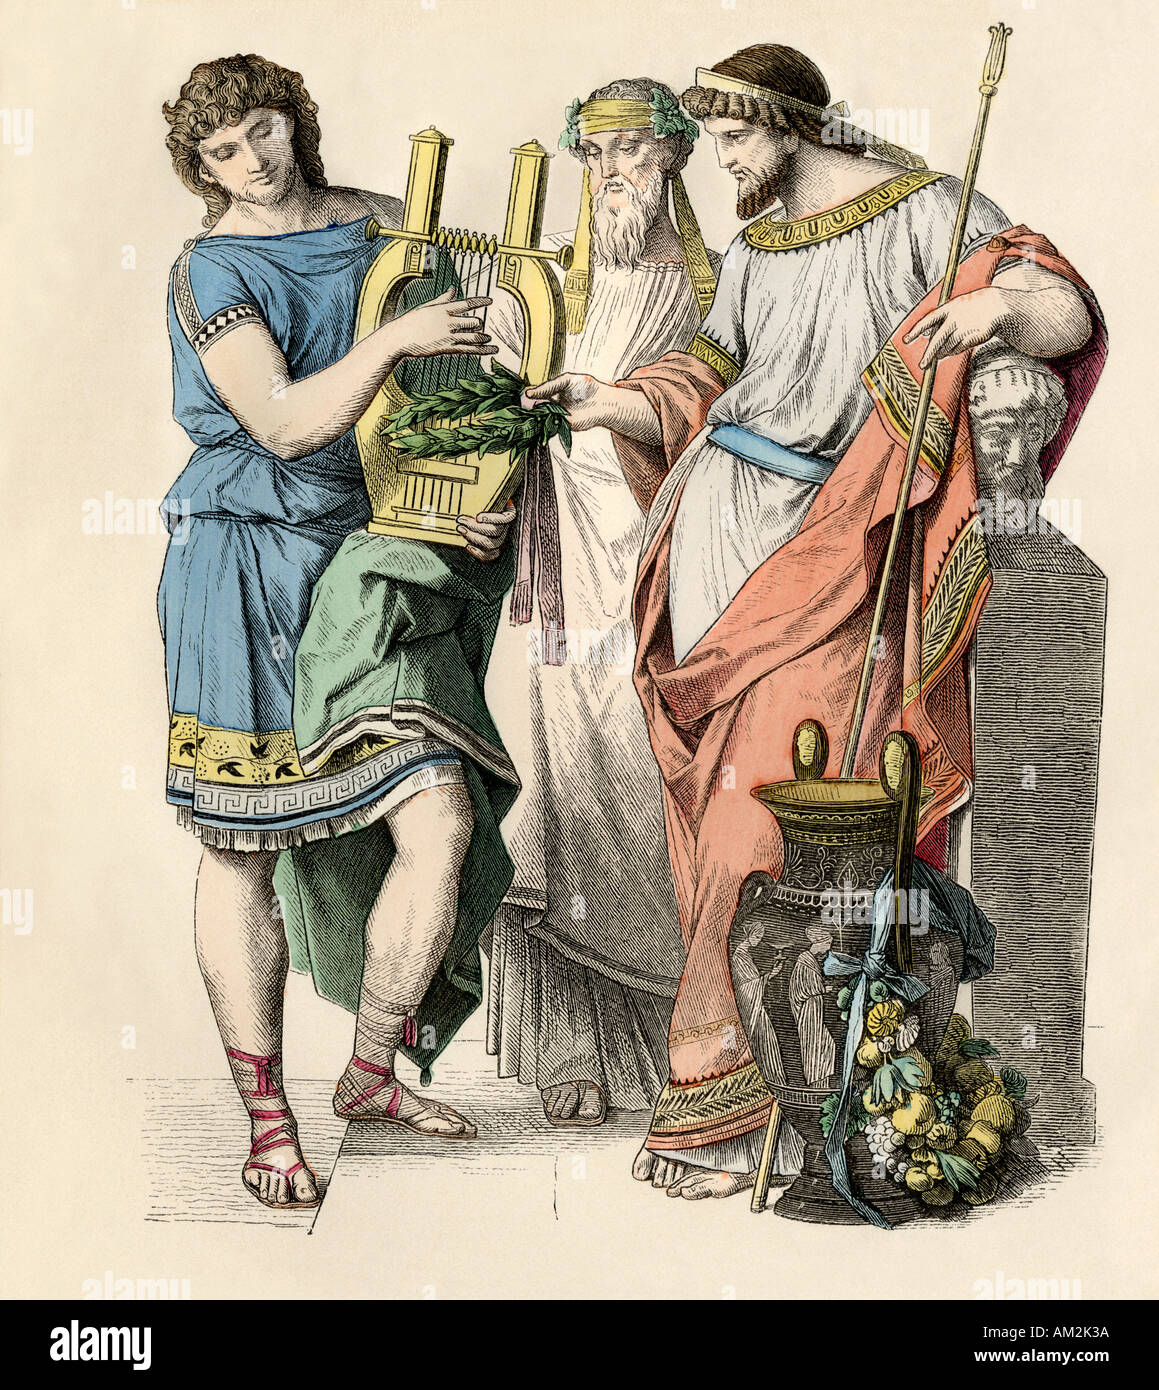 Homme grec jouant de la lyre, un prêtre de Dionysos ou Bacchus, et roi grec tenant une couronne de laurier. Impression couleur à la main Banque D'Images